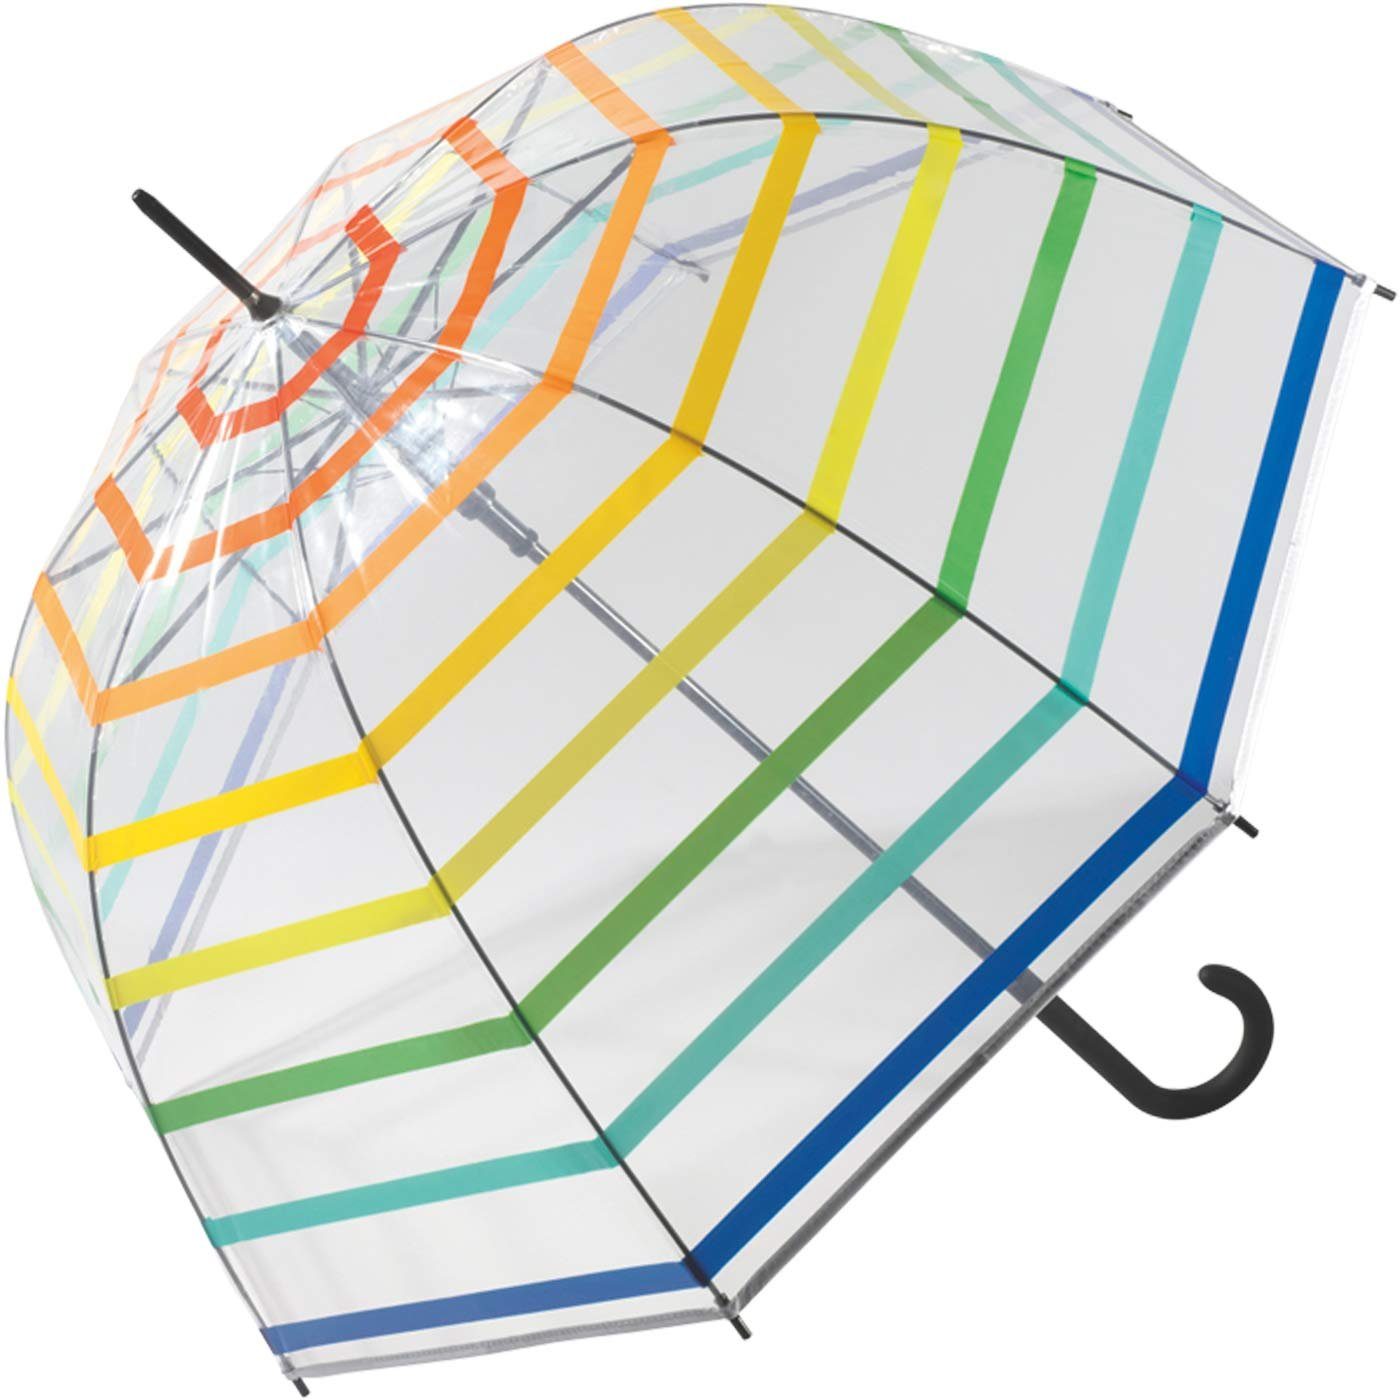 durchsichtigen Langregenschirm mit United transparent diesem of Druchblick Regenbogen, mit Benetton Automatik Glockenschirm Kuppelschirm Colors voller